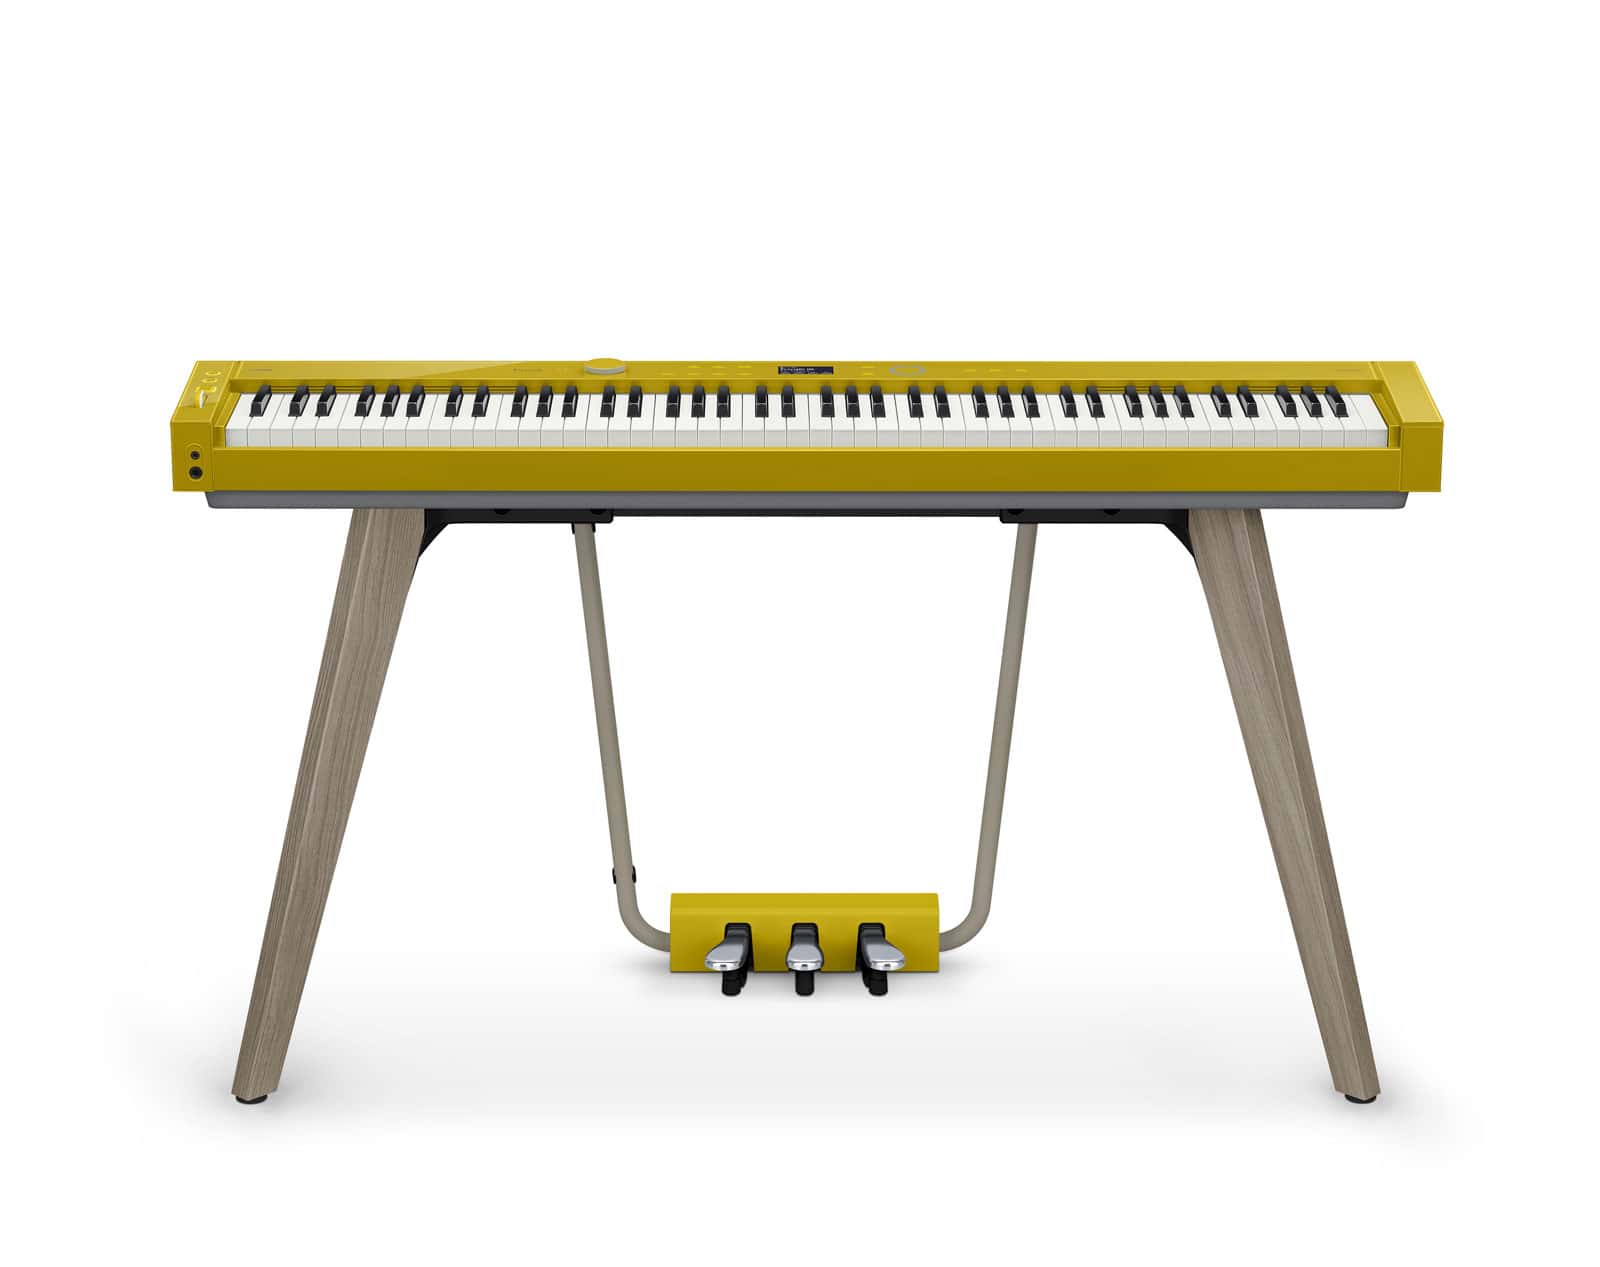 Yamaha P105 Piano numérique, noir, Support, Tabouret et Casque GRATUITS